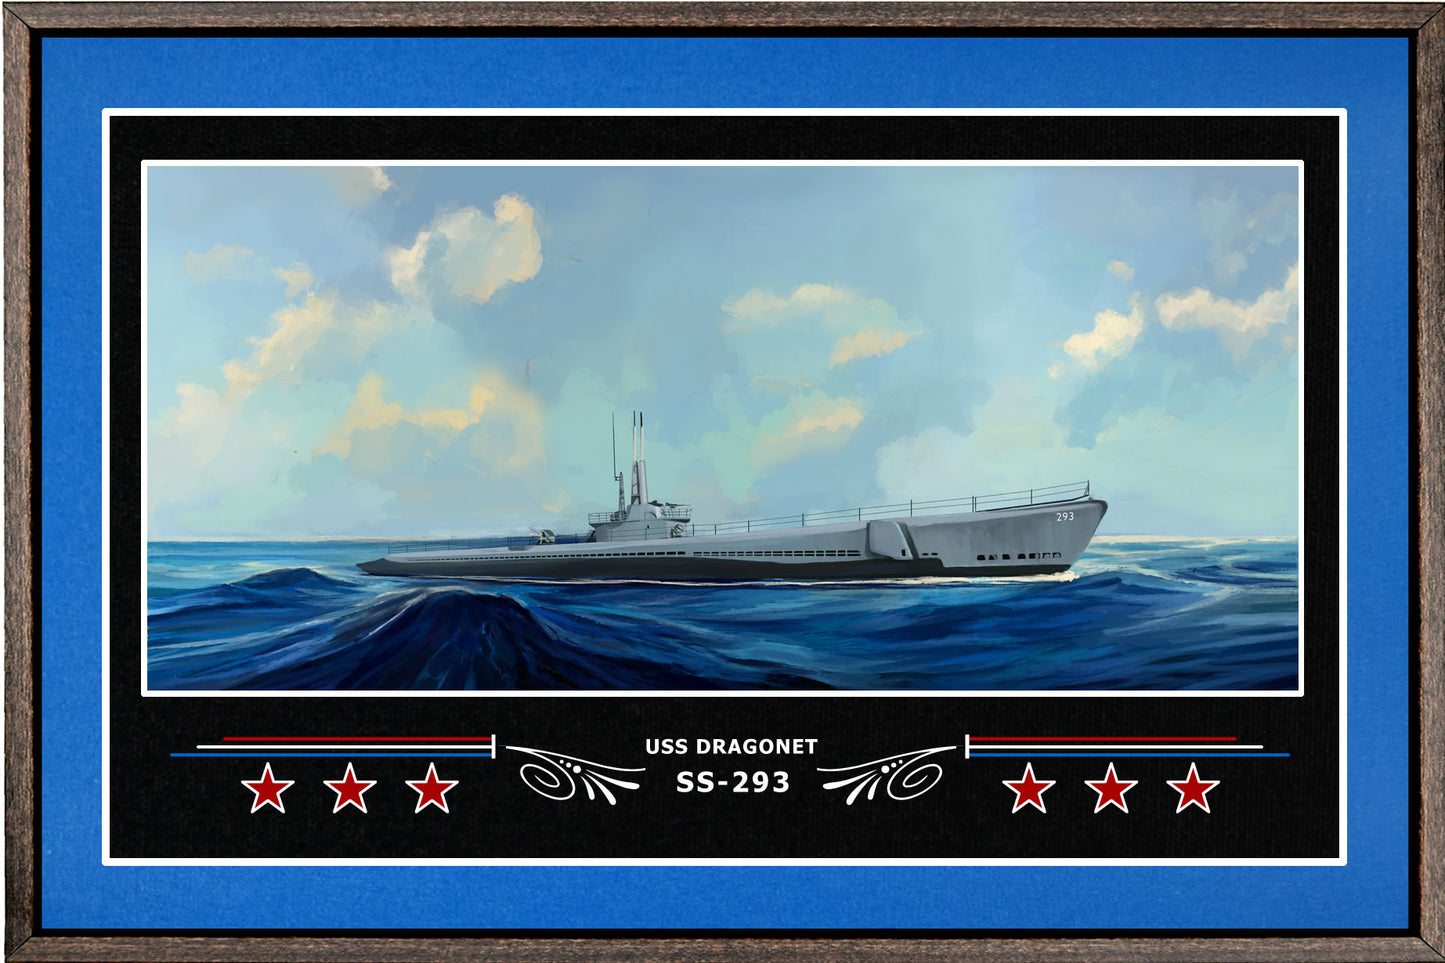 USS DRAGONET SS 293 BOX FRAMED CANVAS ART BLUE